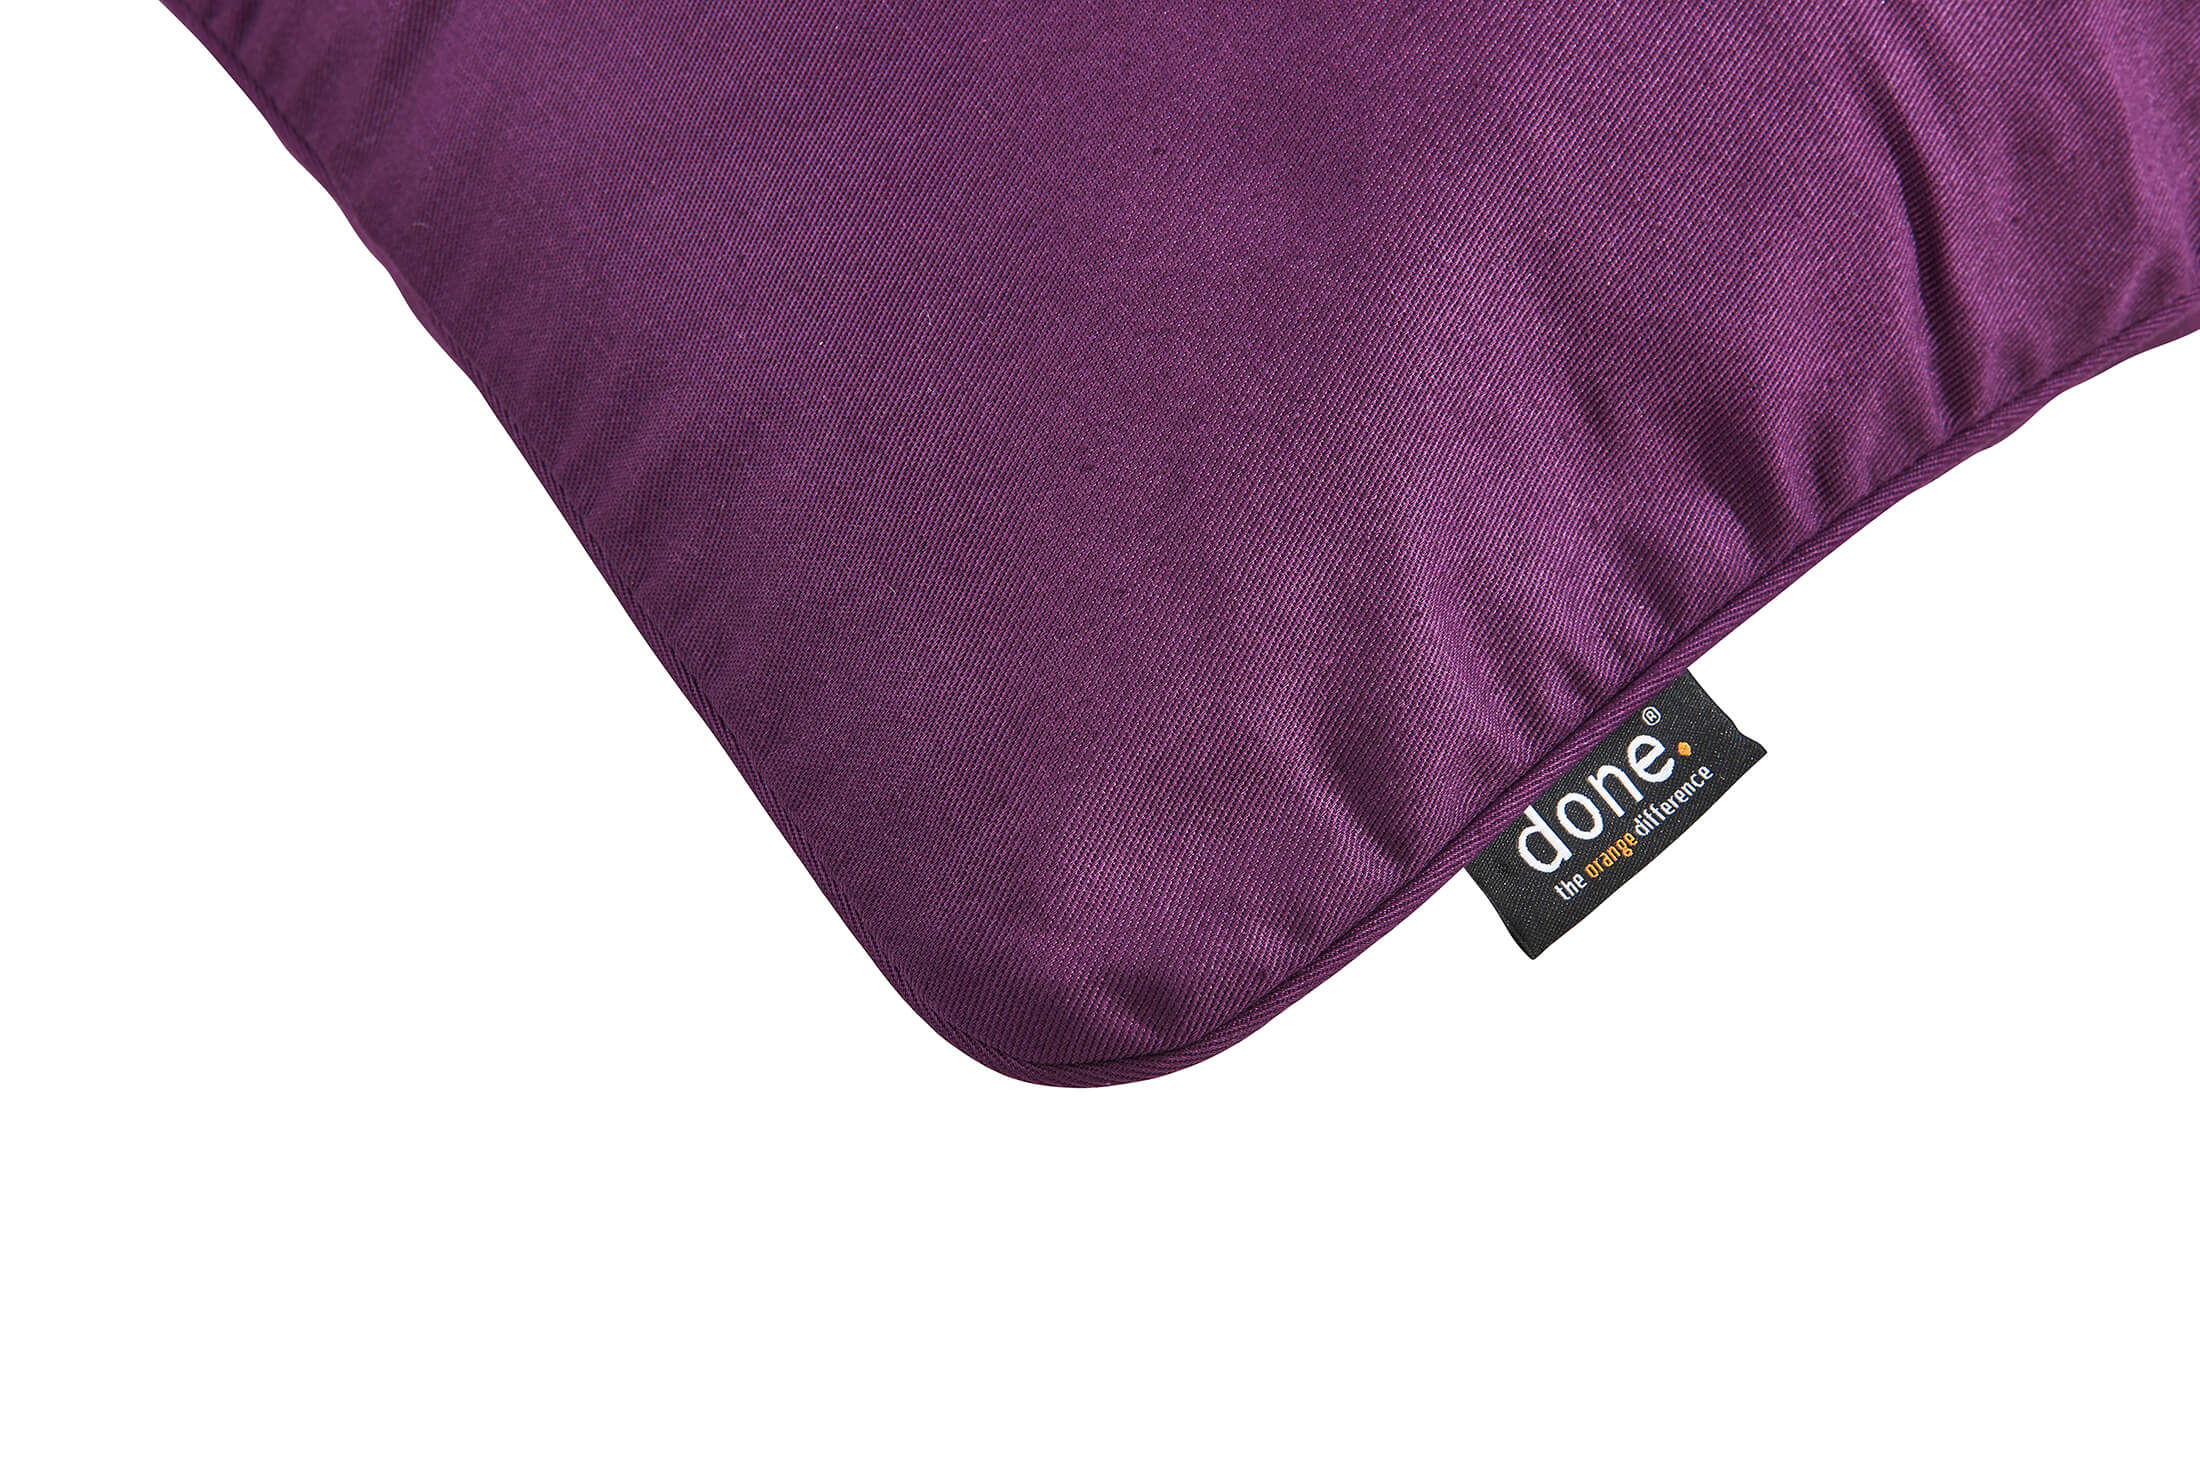 Декоративна подушка Uni Purple